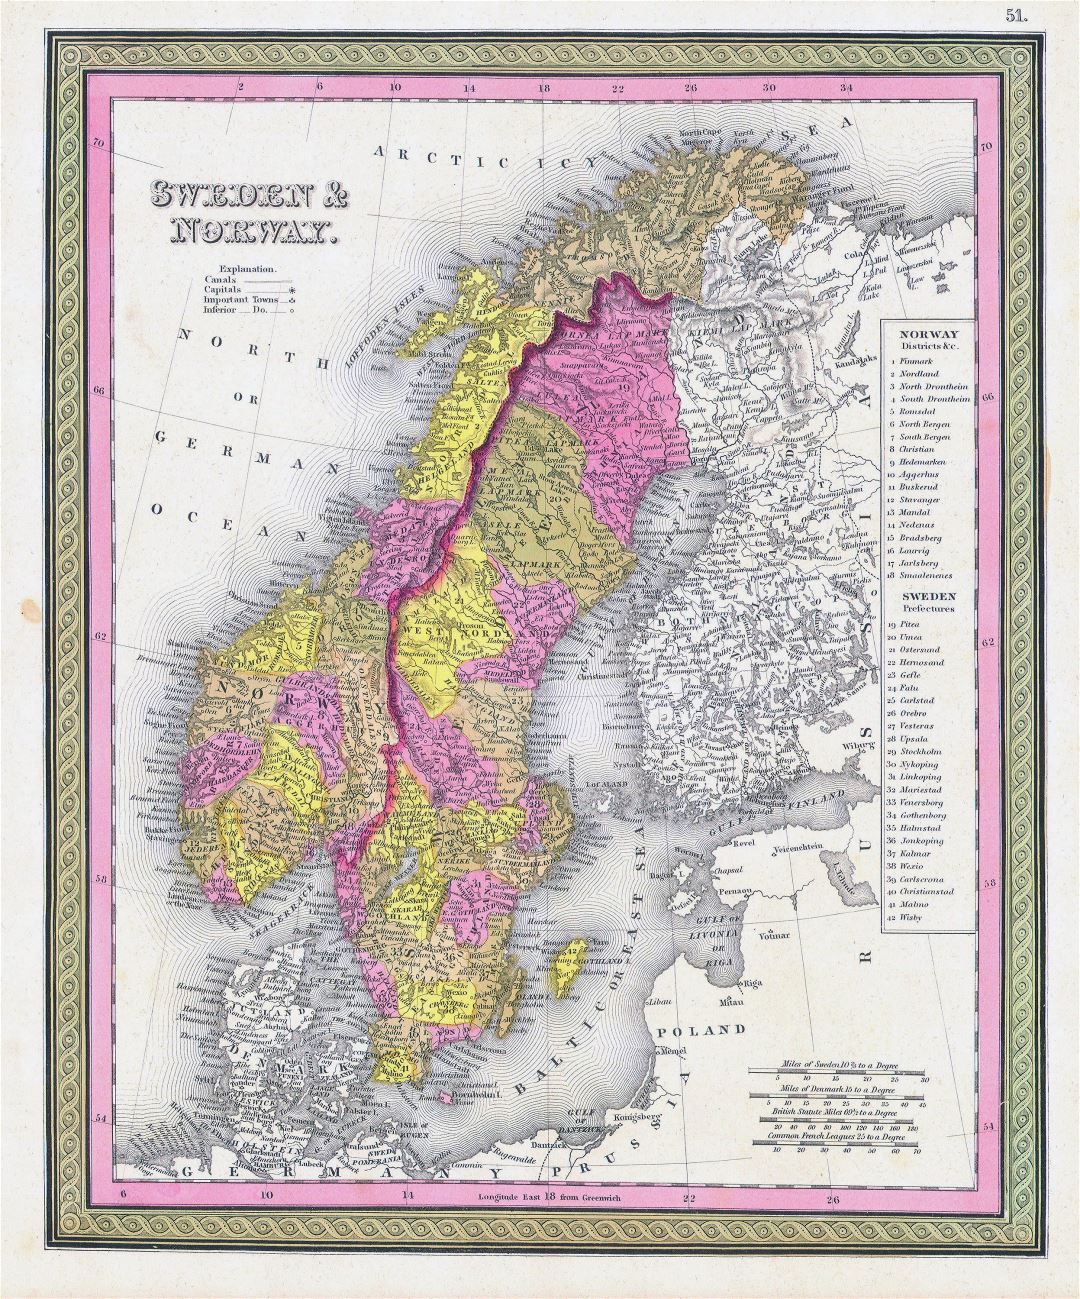 Grande detallado antiguo mapa político y administrativo de Suecia y Noruega con ciudades - 1850